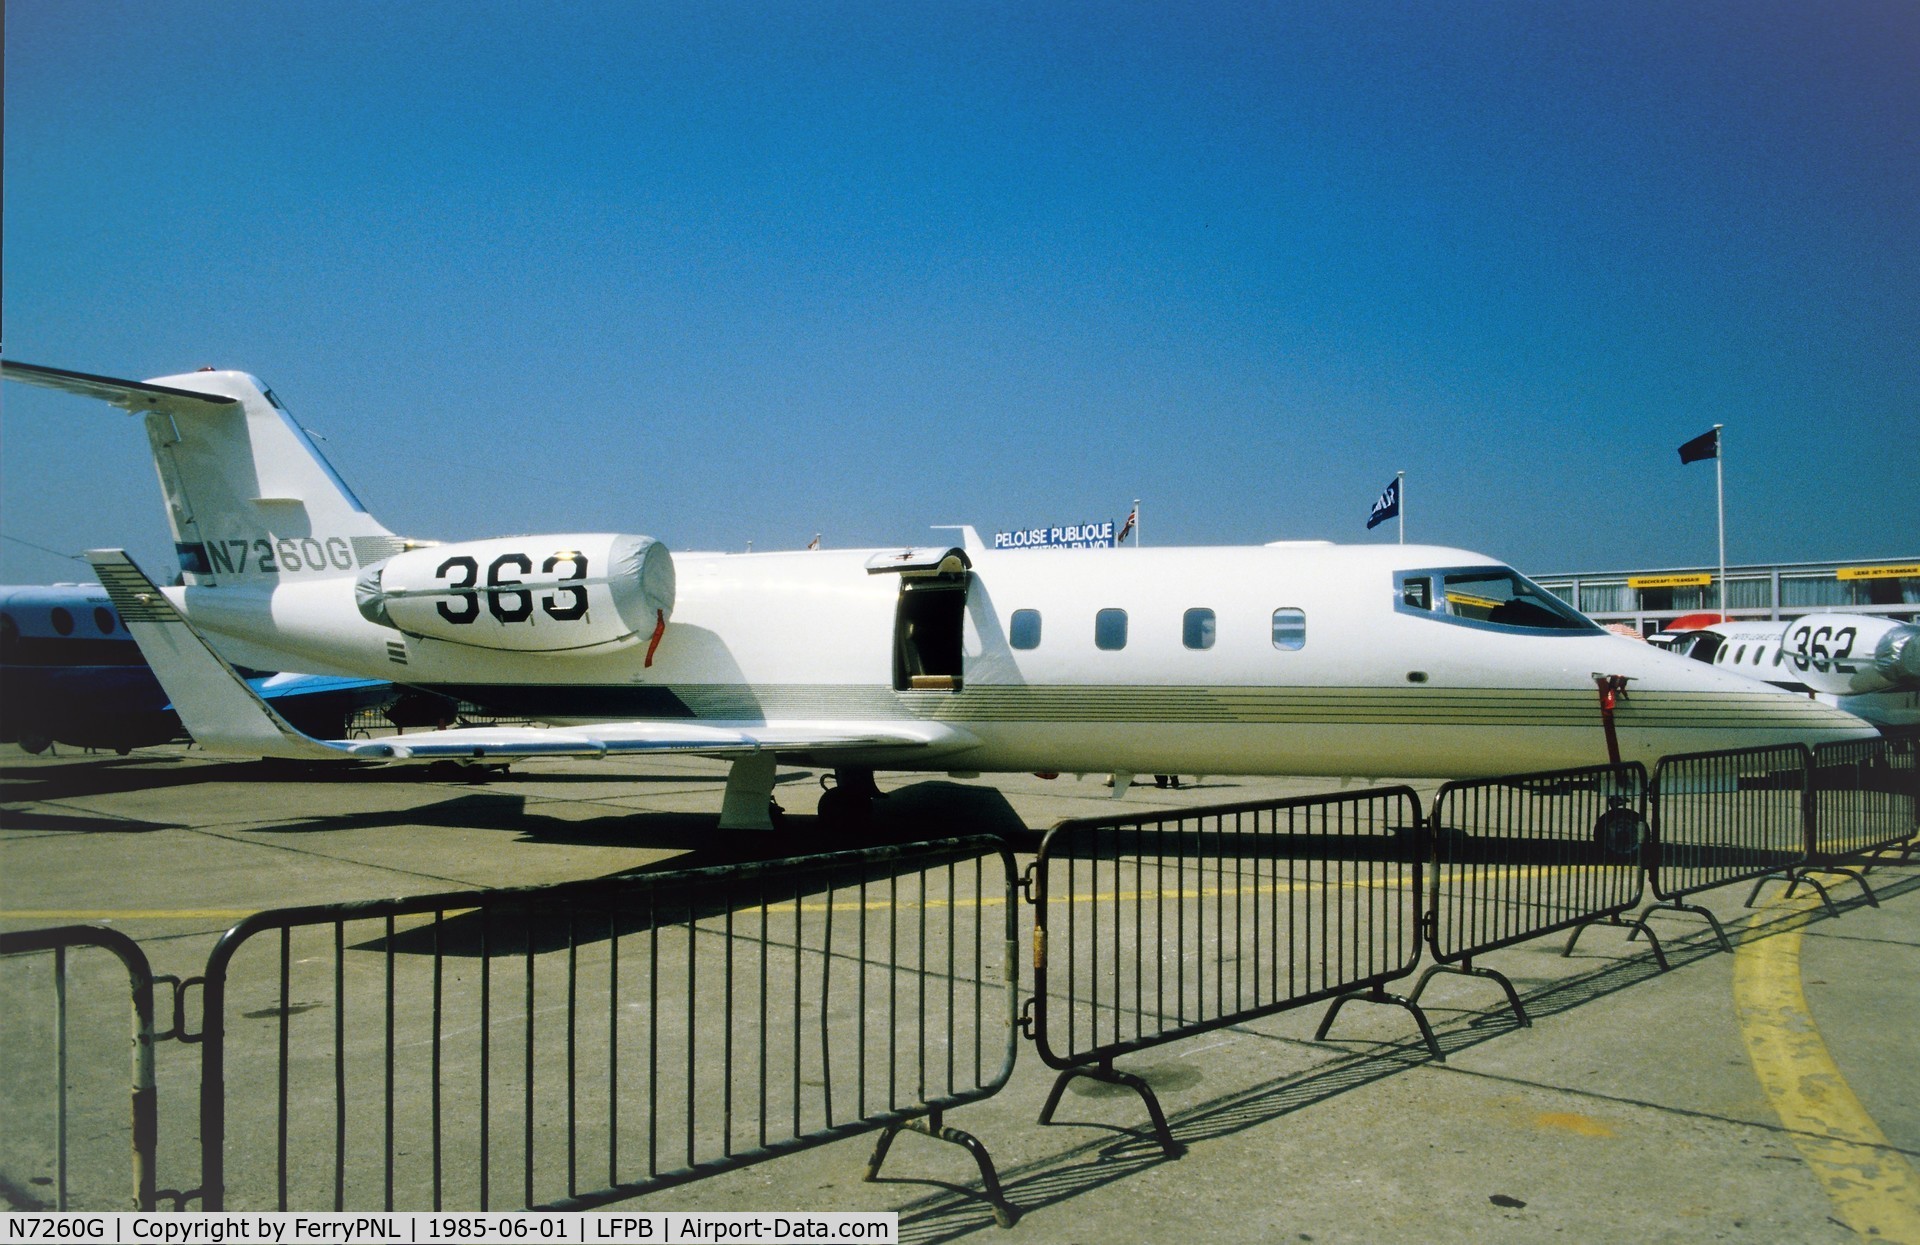 N7260G, Gates Learjet 55 C/N 111, Learjet 55 demonstrator in Paris. Plane crashed in 1994 near SDU.